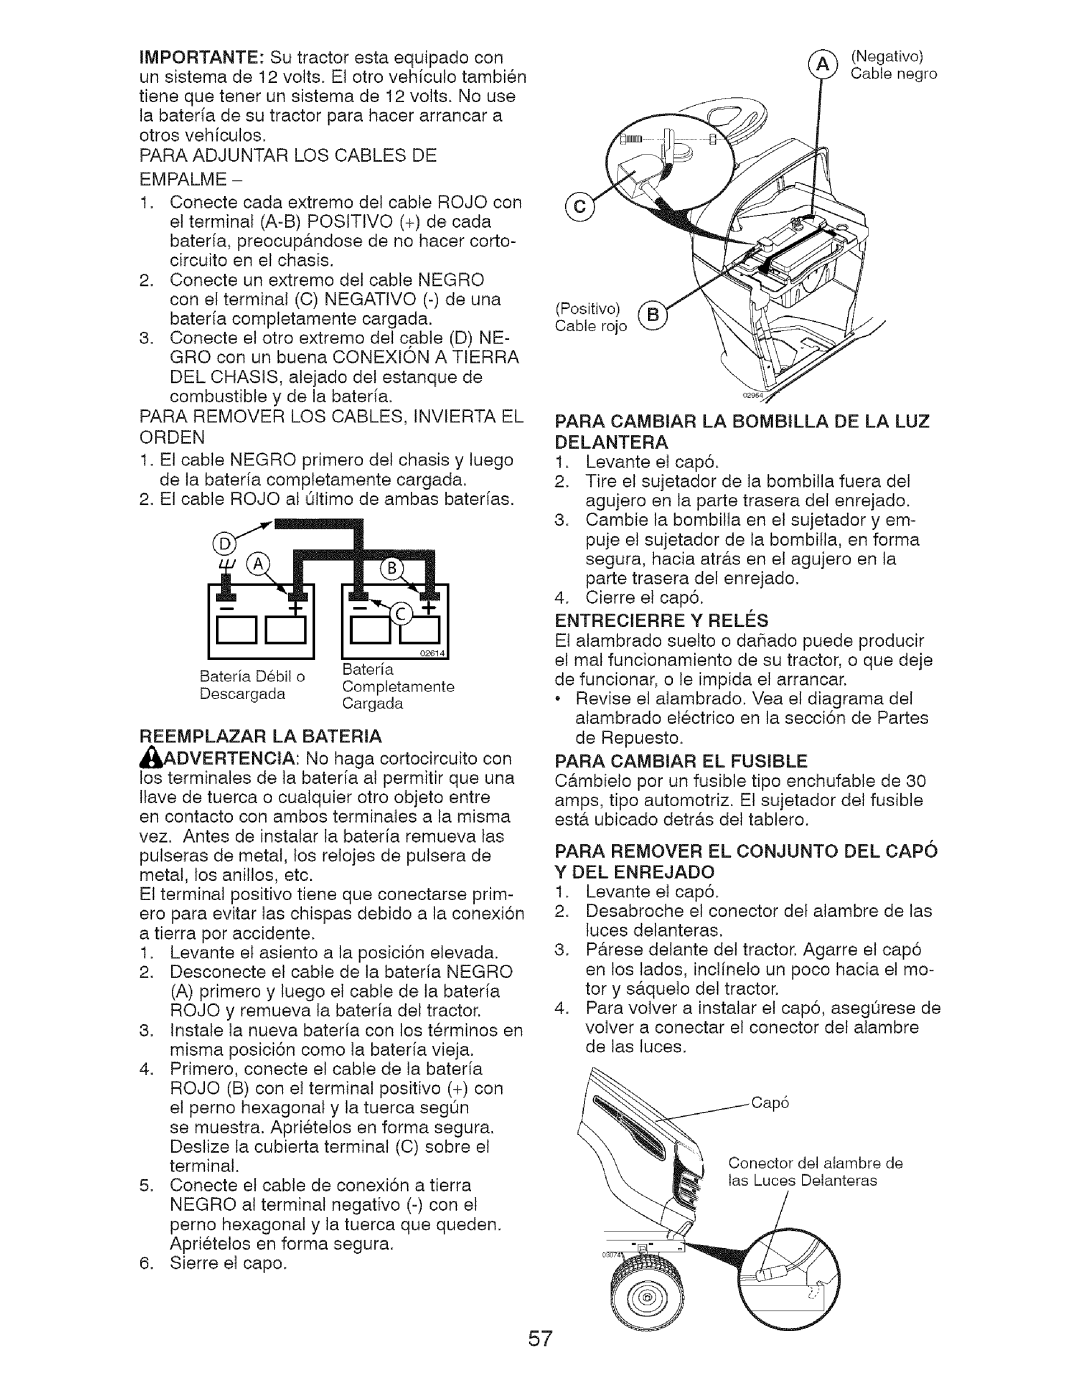 Craftsman 917.28726 owner manual Para Adjuntar Los Cables De Empalme 